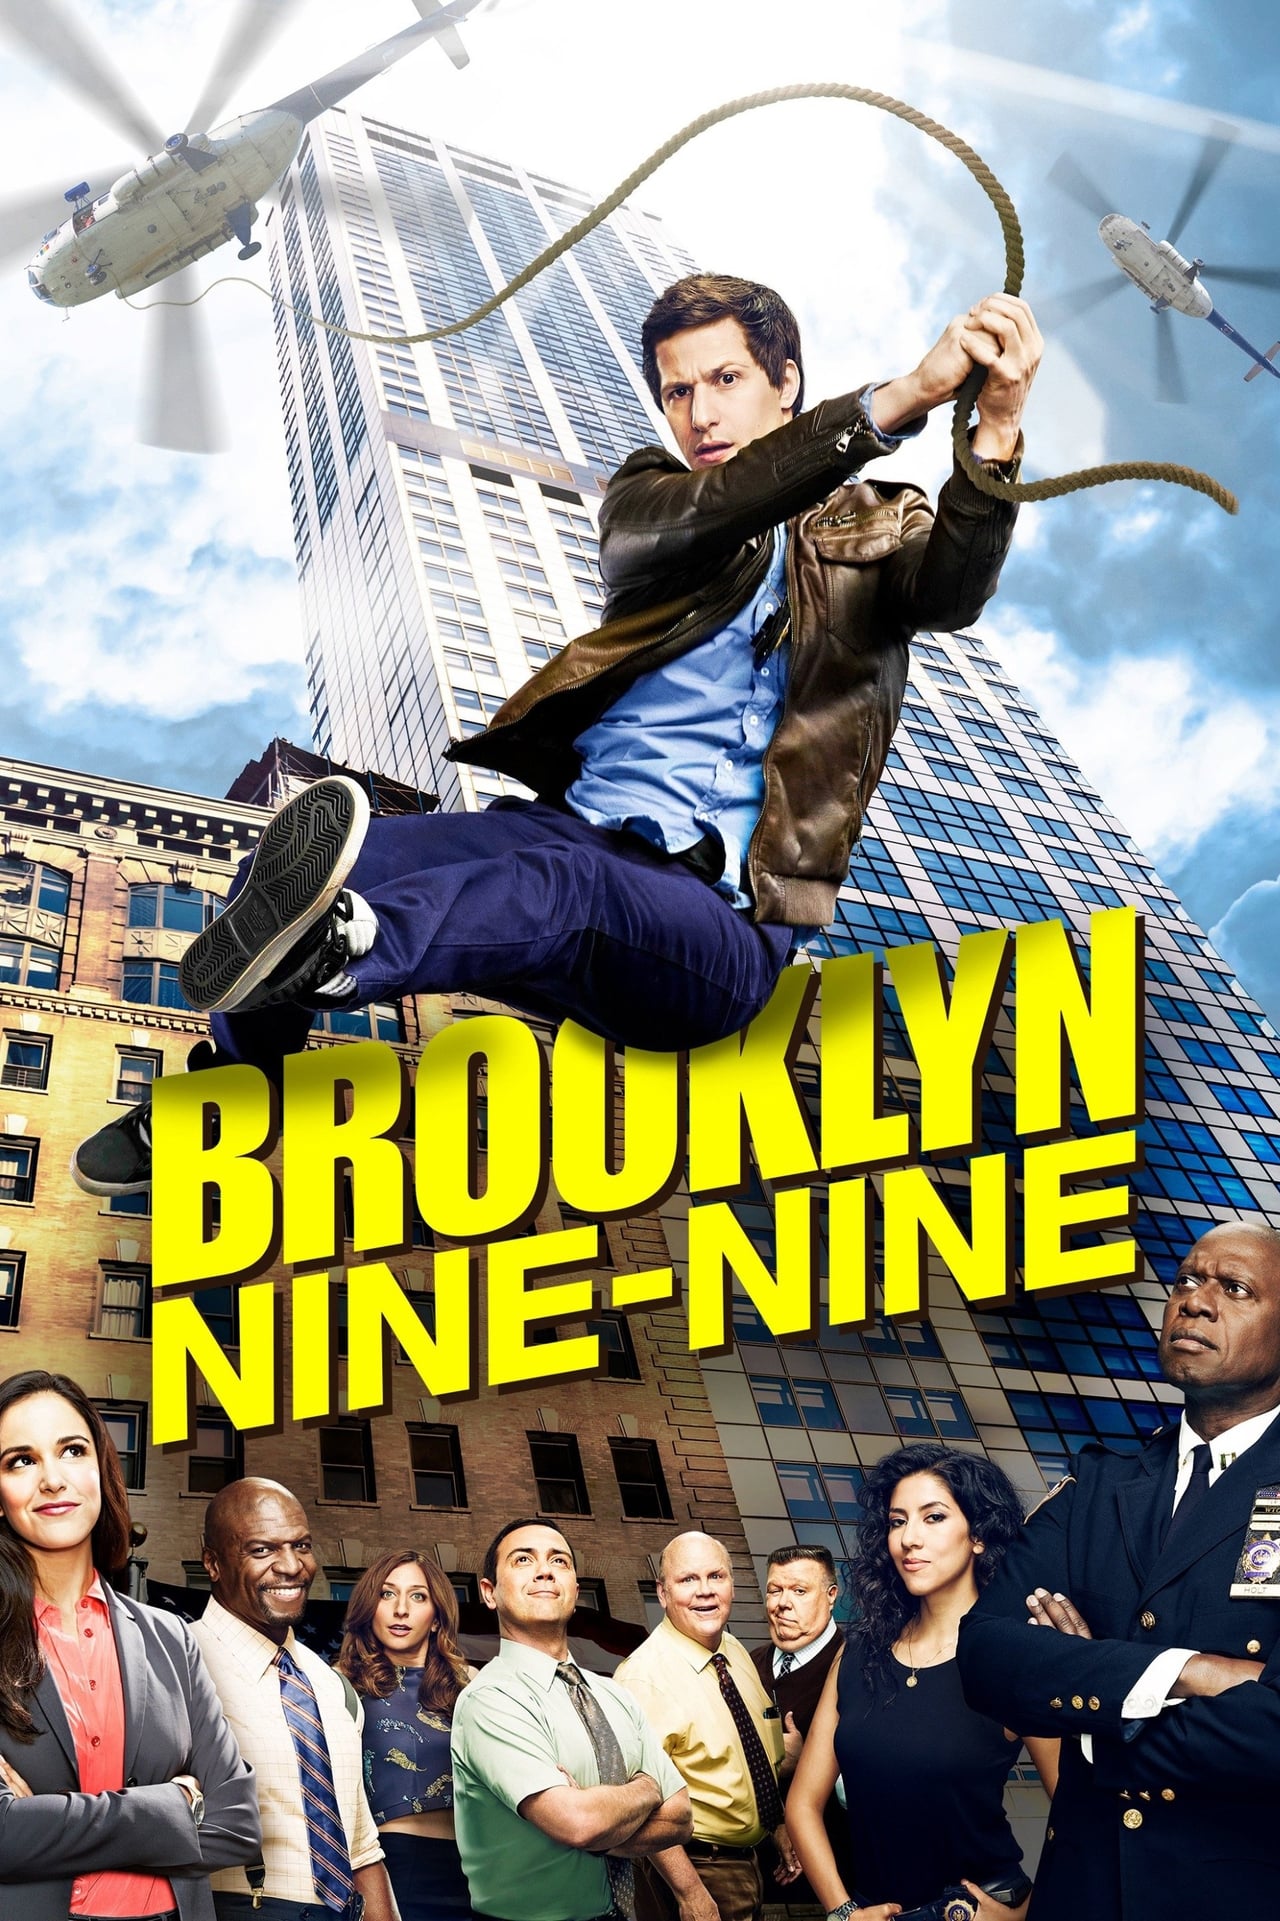 Brooklyn Nine-Nine (2013)